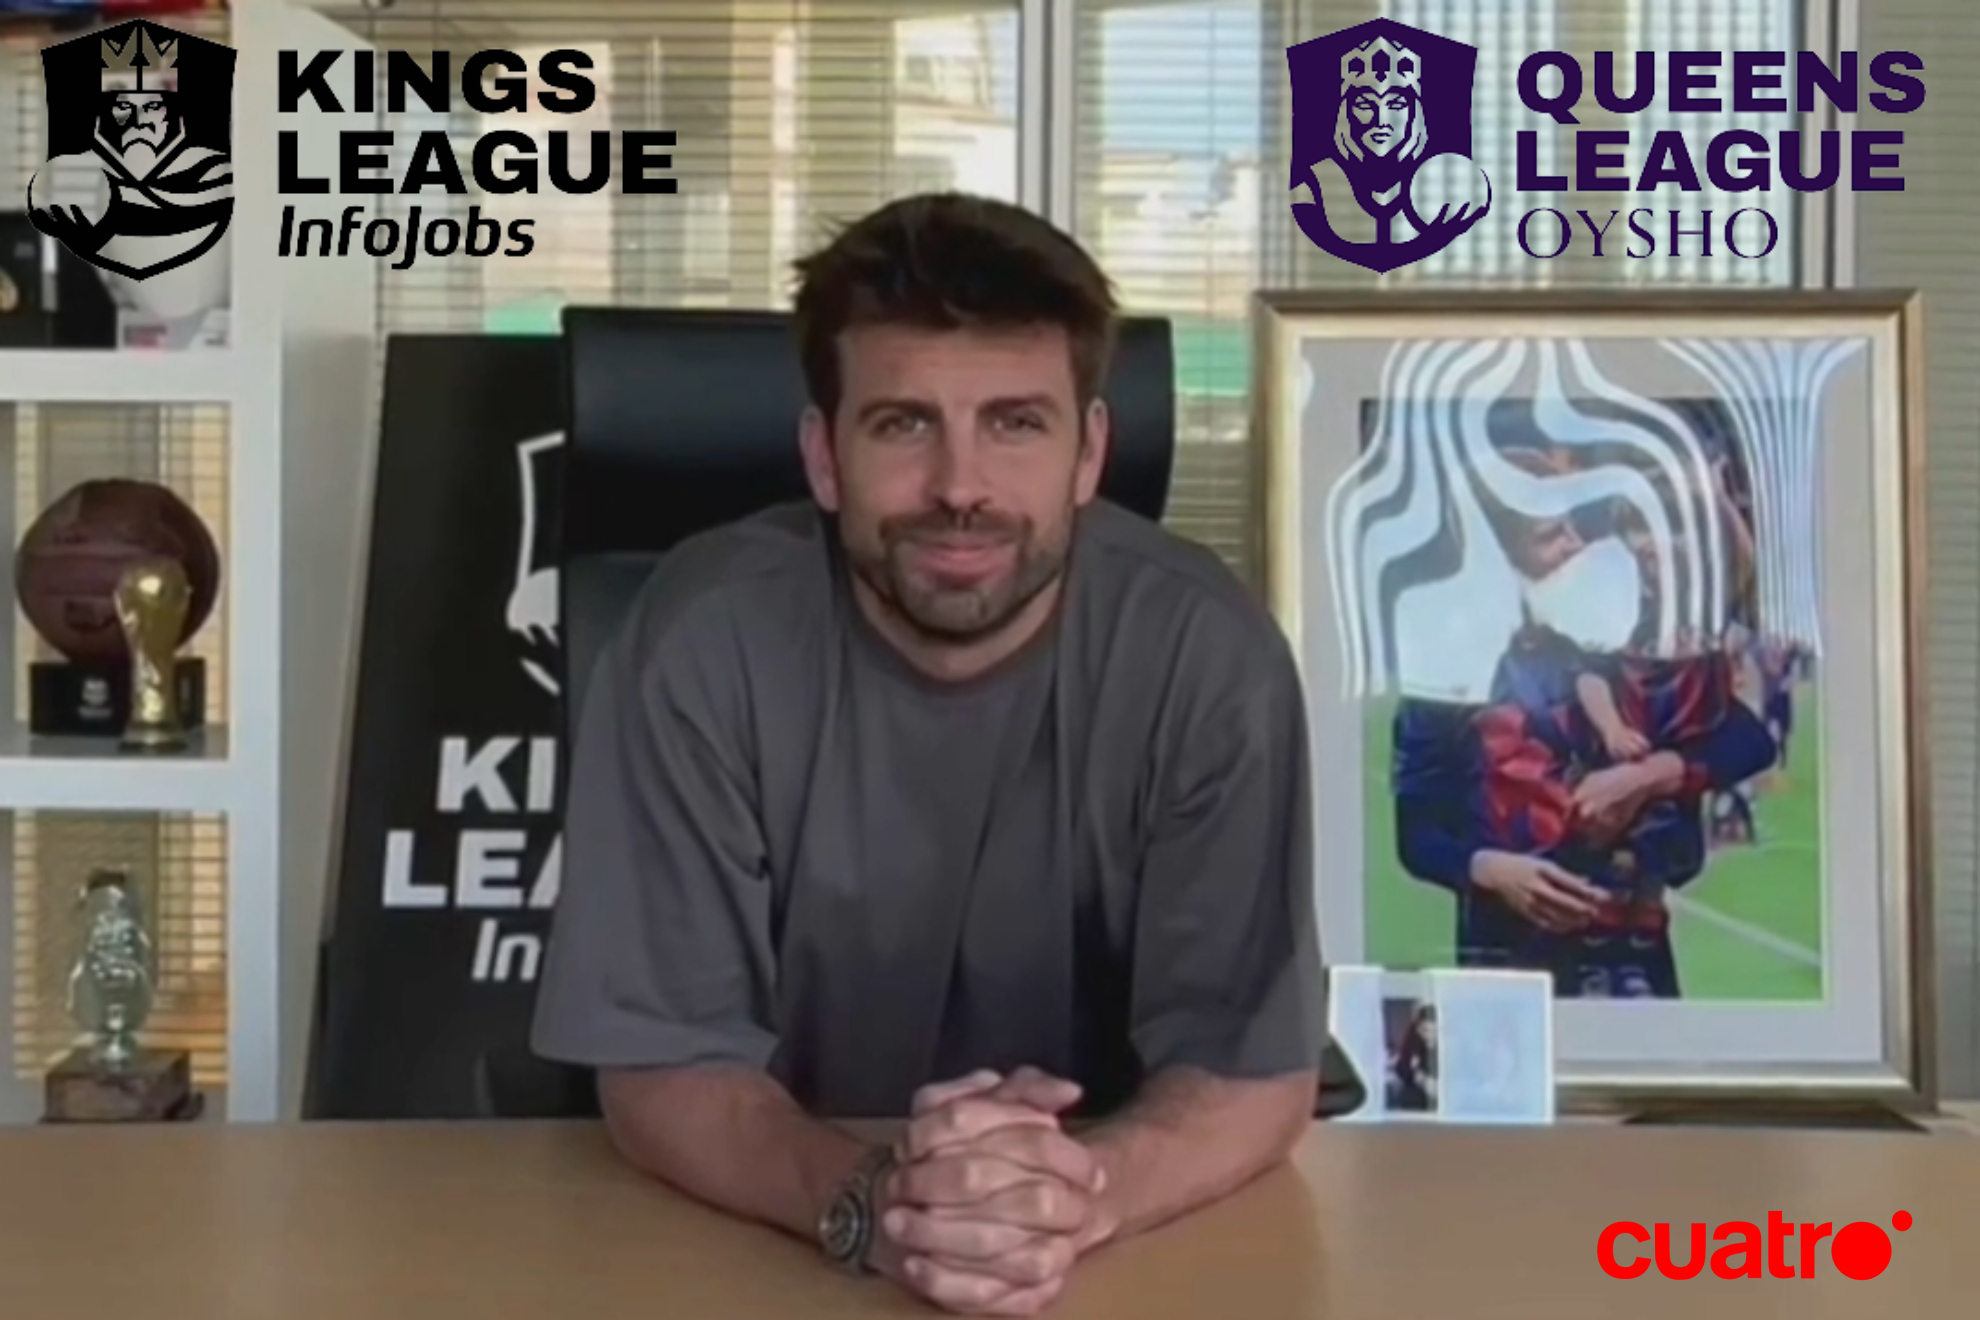 La Kings League y la Queens League llegan a Mediaset Espaa y se podrn ver en Cuatro